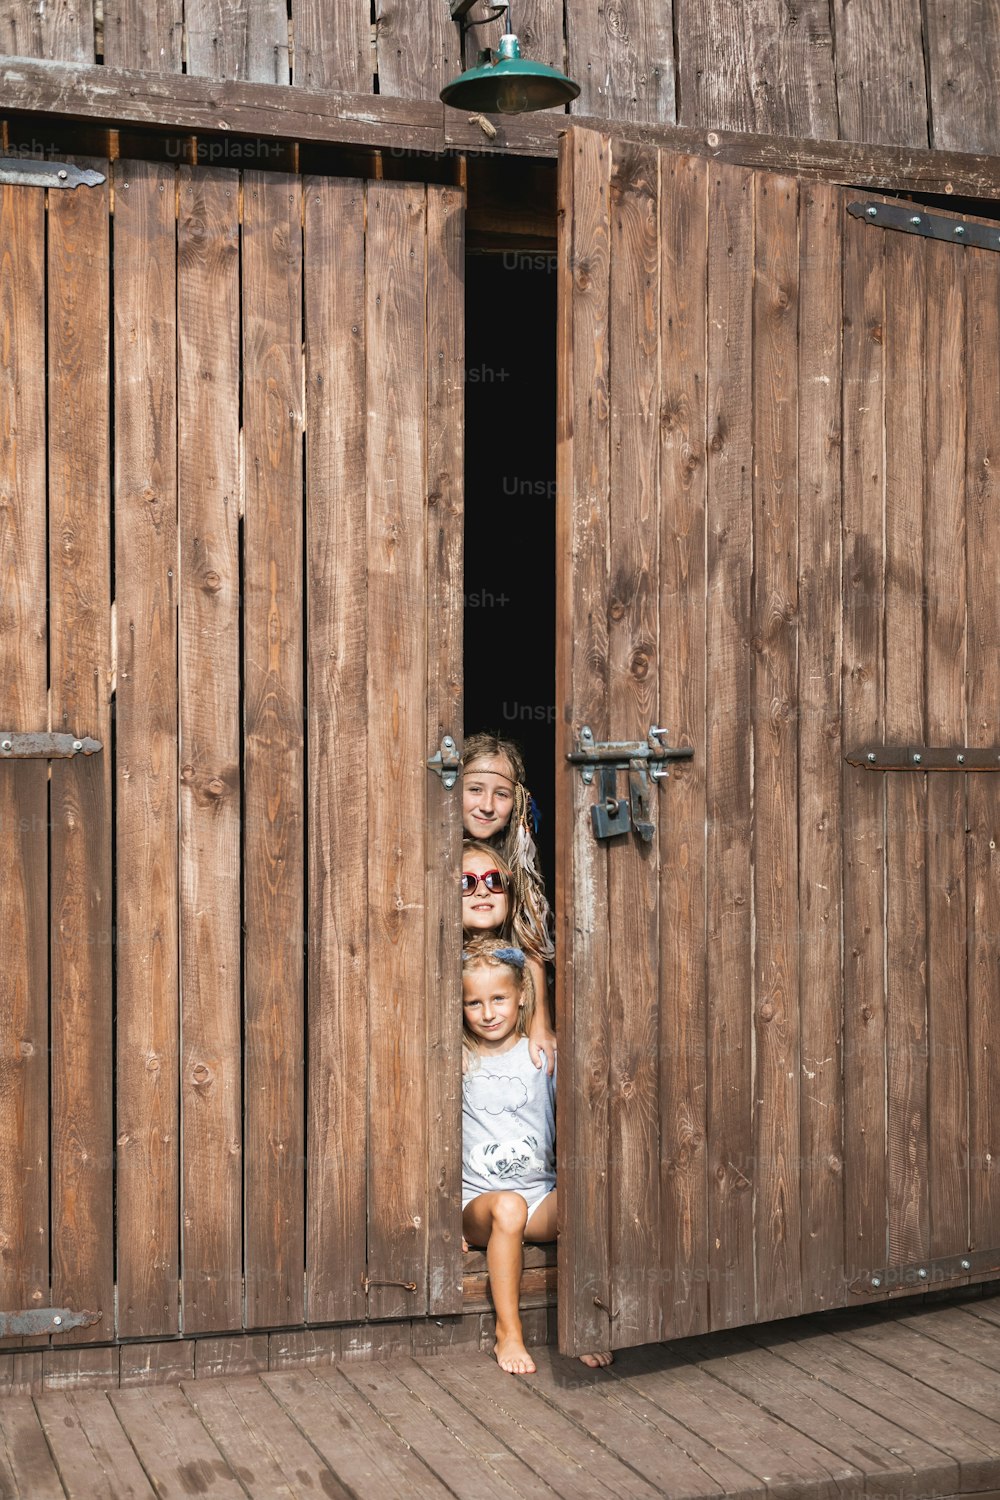 Trois petites filles de la campagne portant des vêtements bohèmes décontractés, souriantes assises dans une porte de grange en bois à la campagne ou à la ferme, chaude journée d’été. Les enfants s’amusent dans une grange en bois.